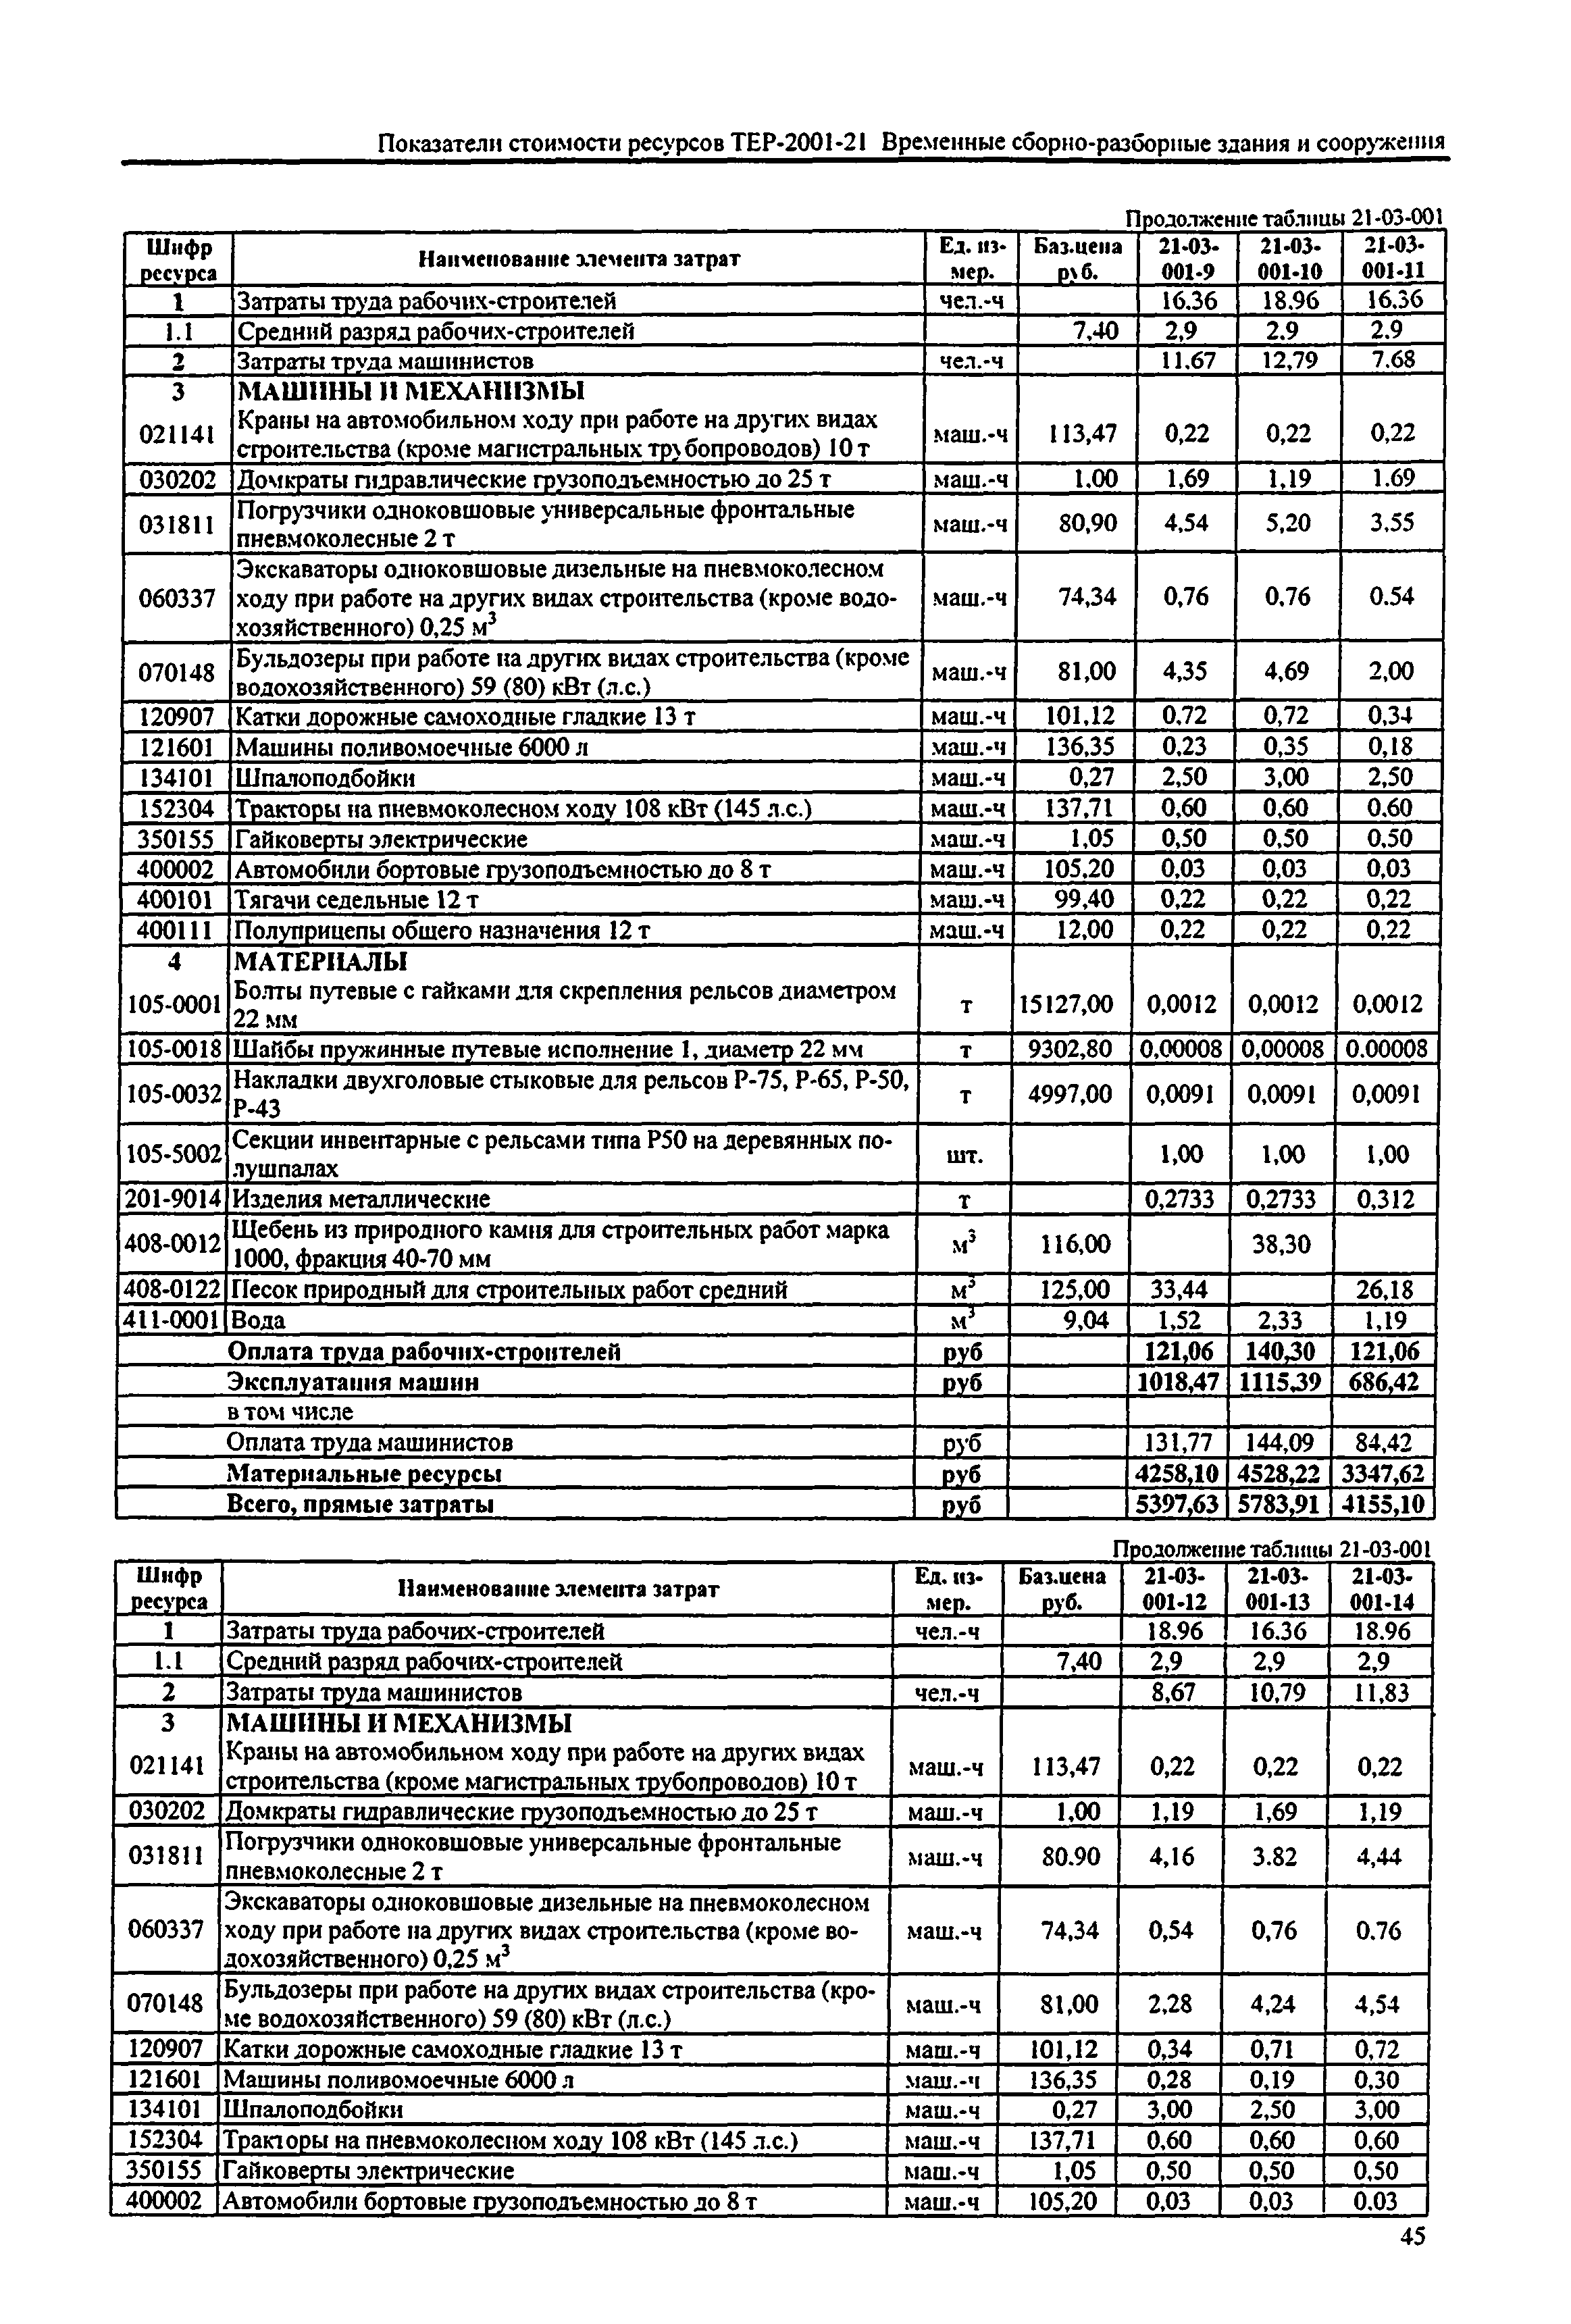 Справочное пособие к ТЕР 81-02-21-2001